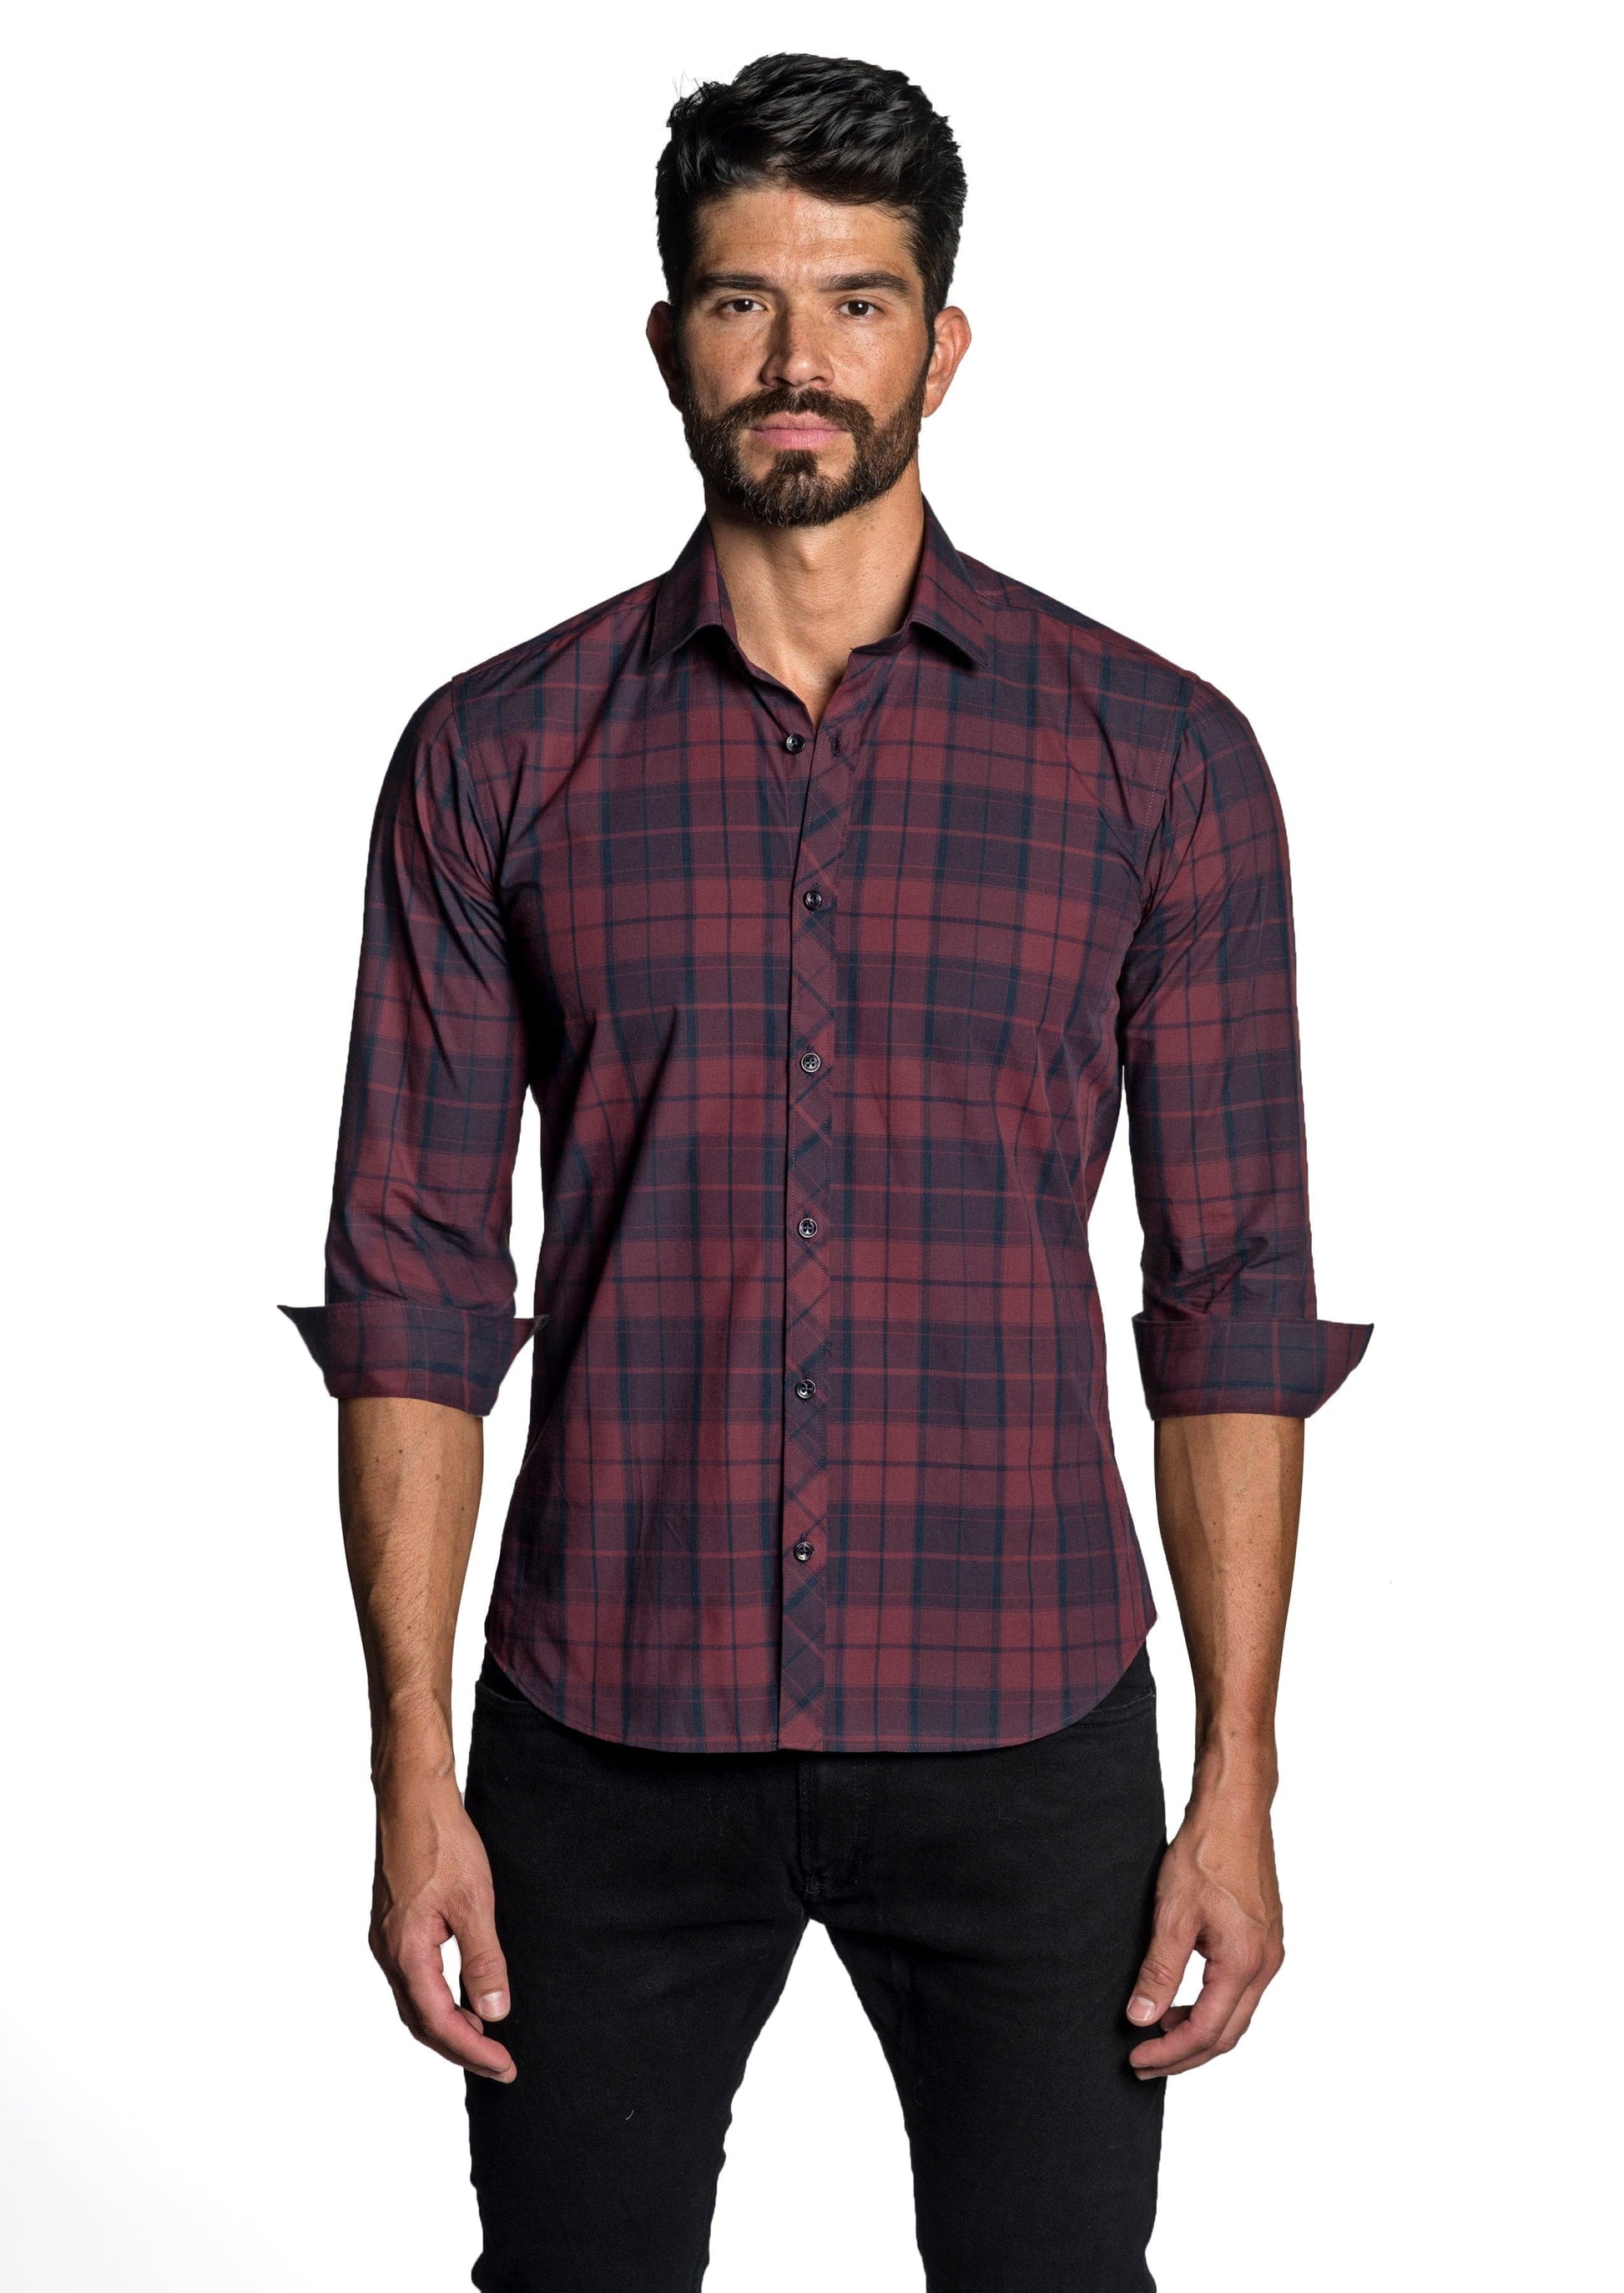 Maroon Long Sleeve Shirt OT-6622 - Front - Jared Lang